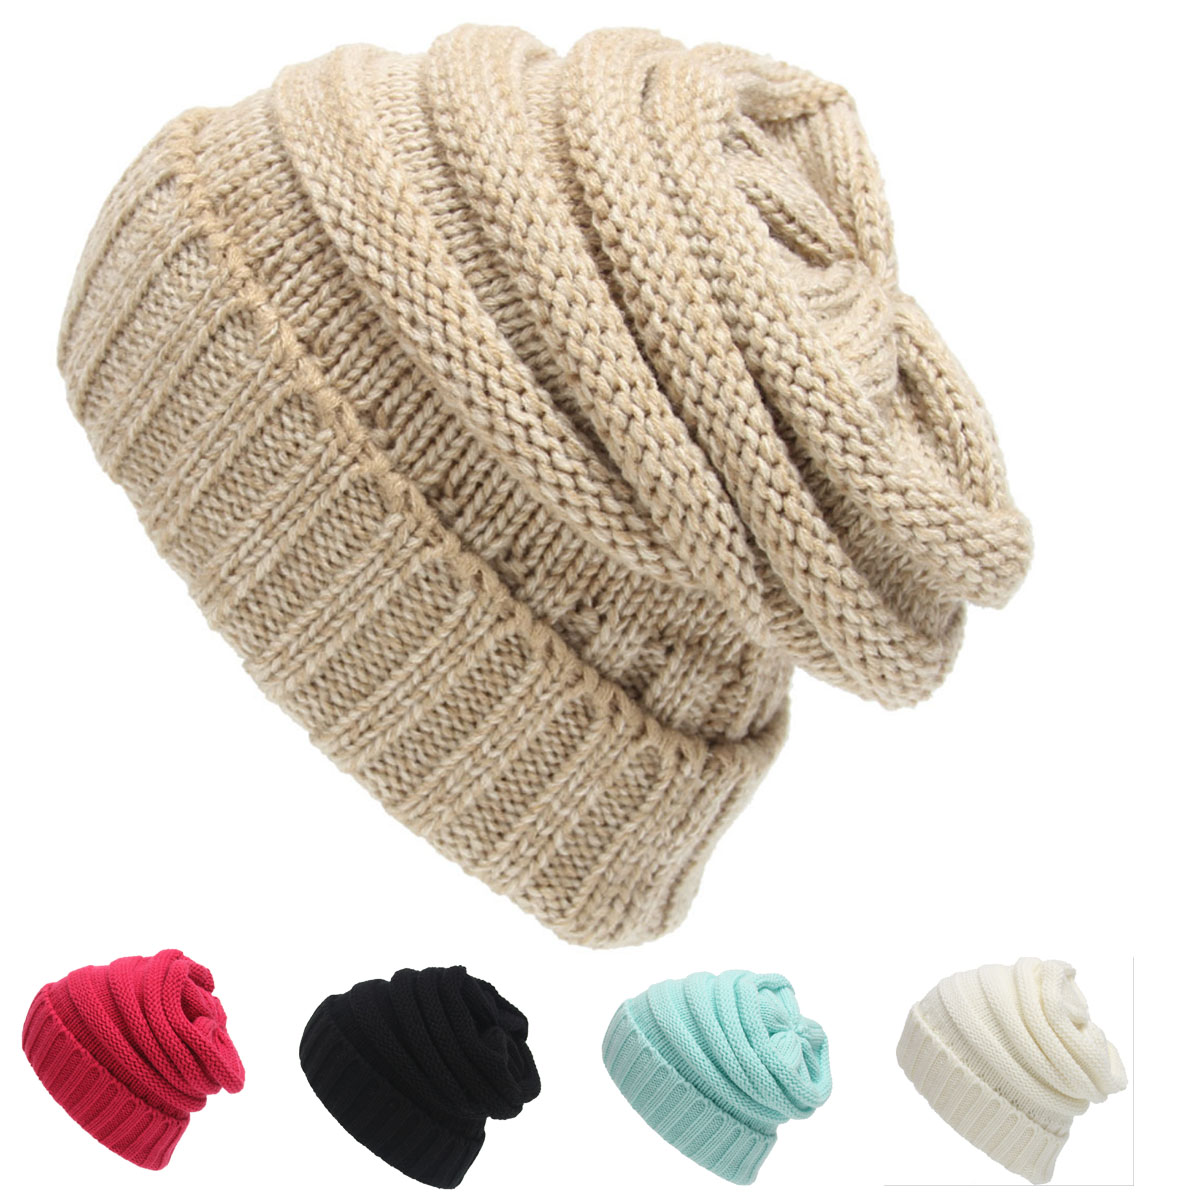 GL-AAD1072 Soft Knit Winter Beanie